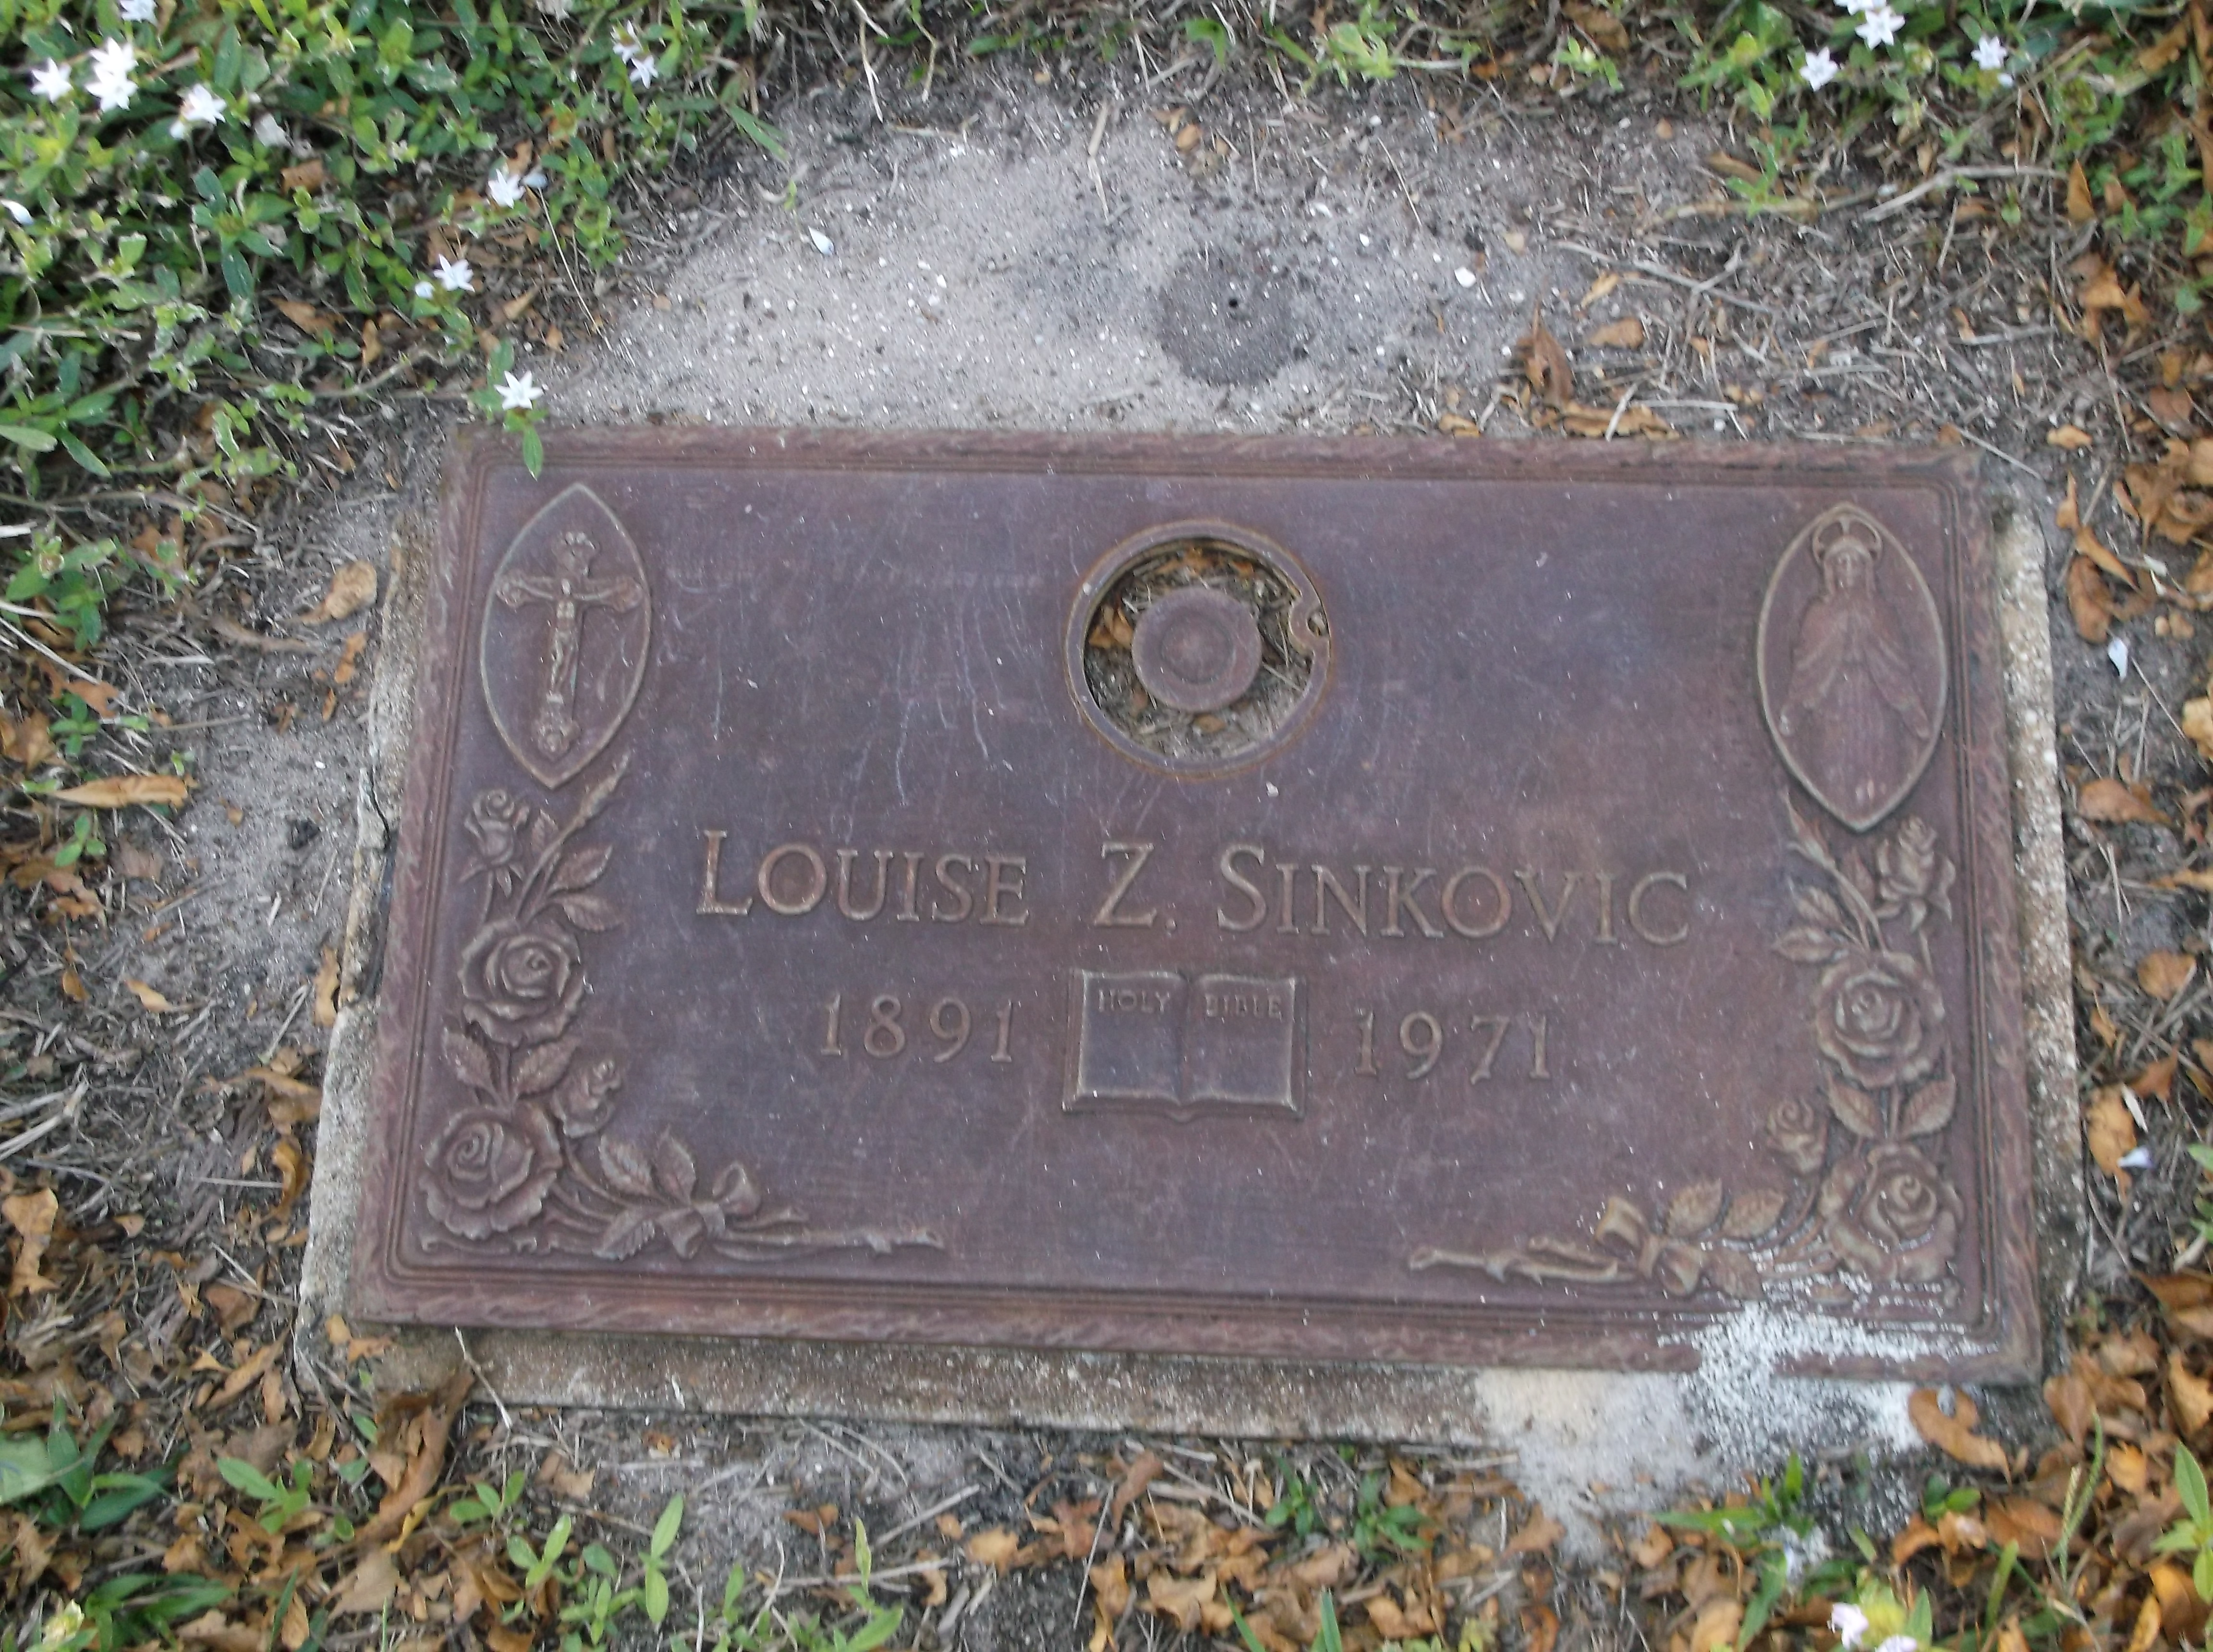 Louise Z Sinkovic